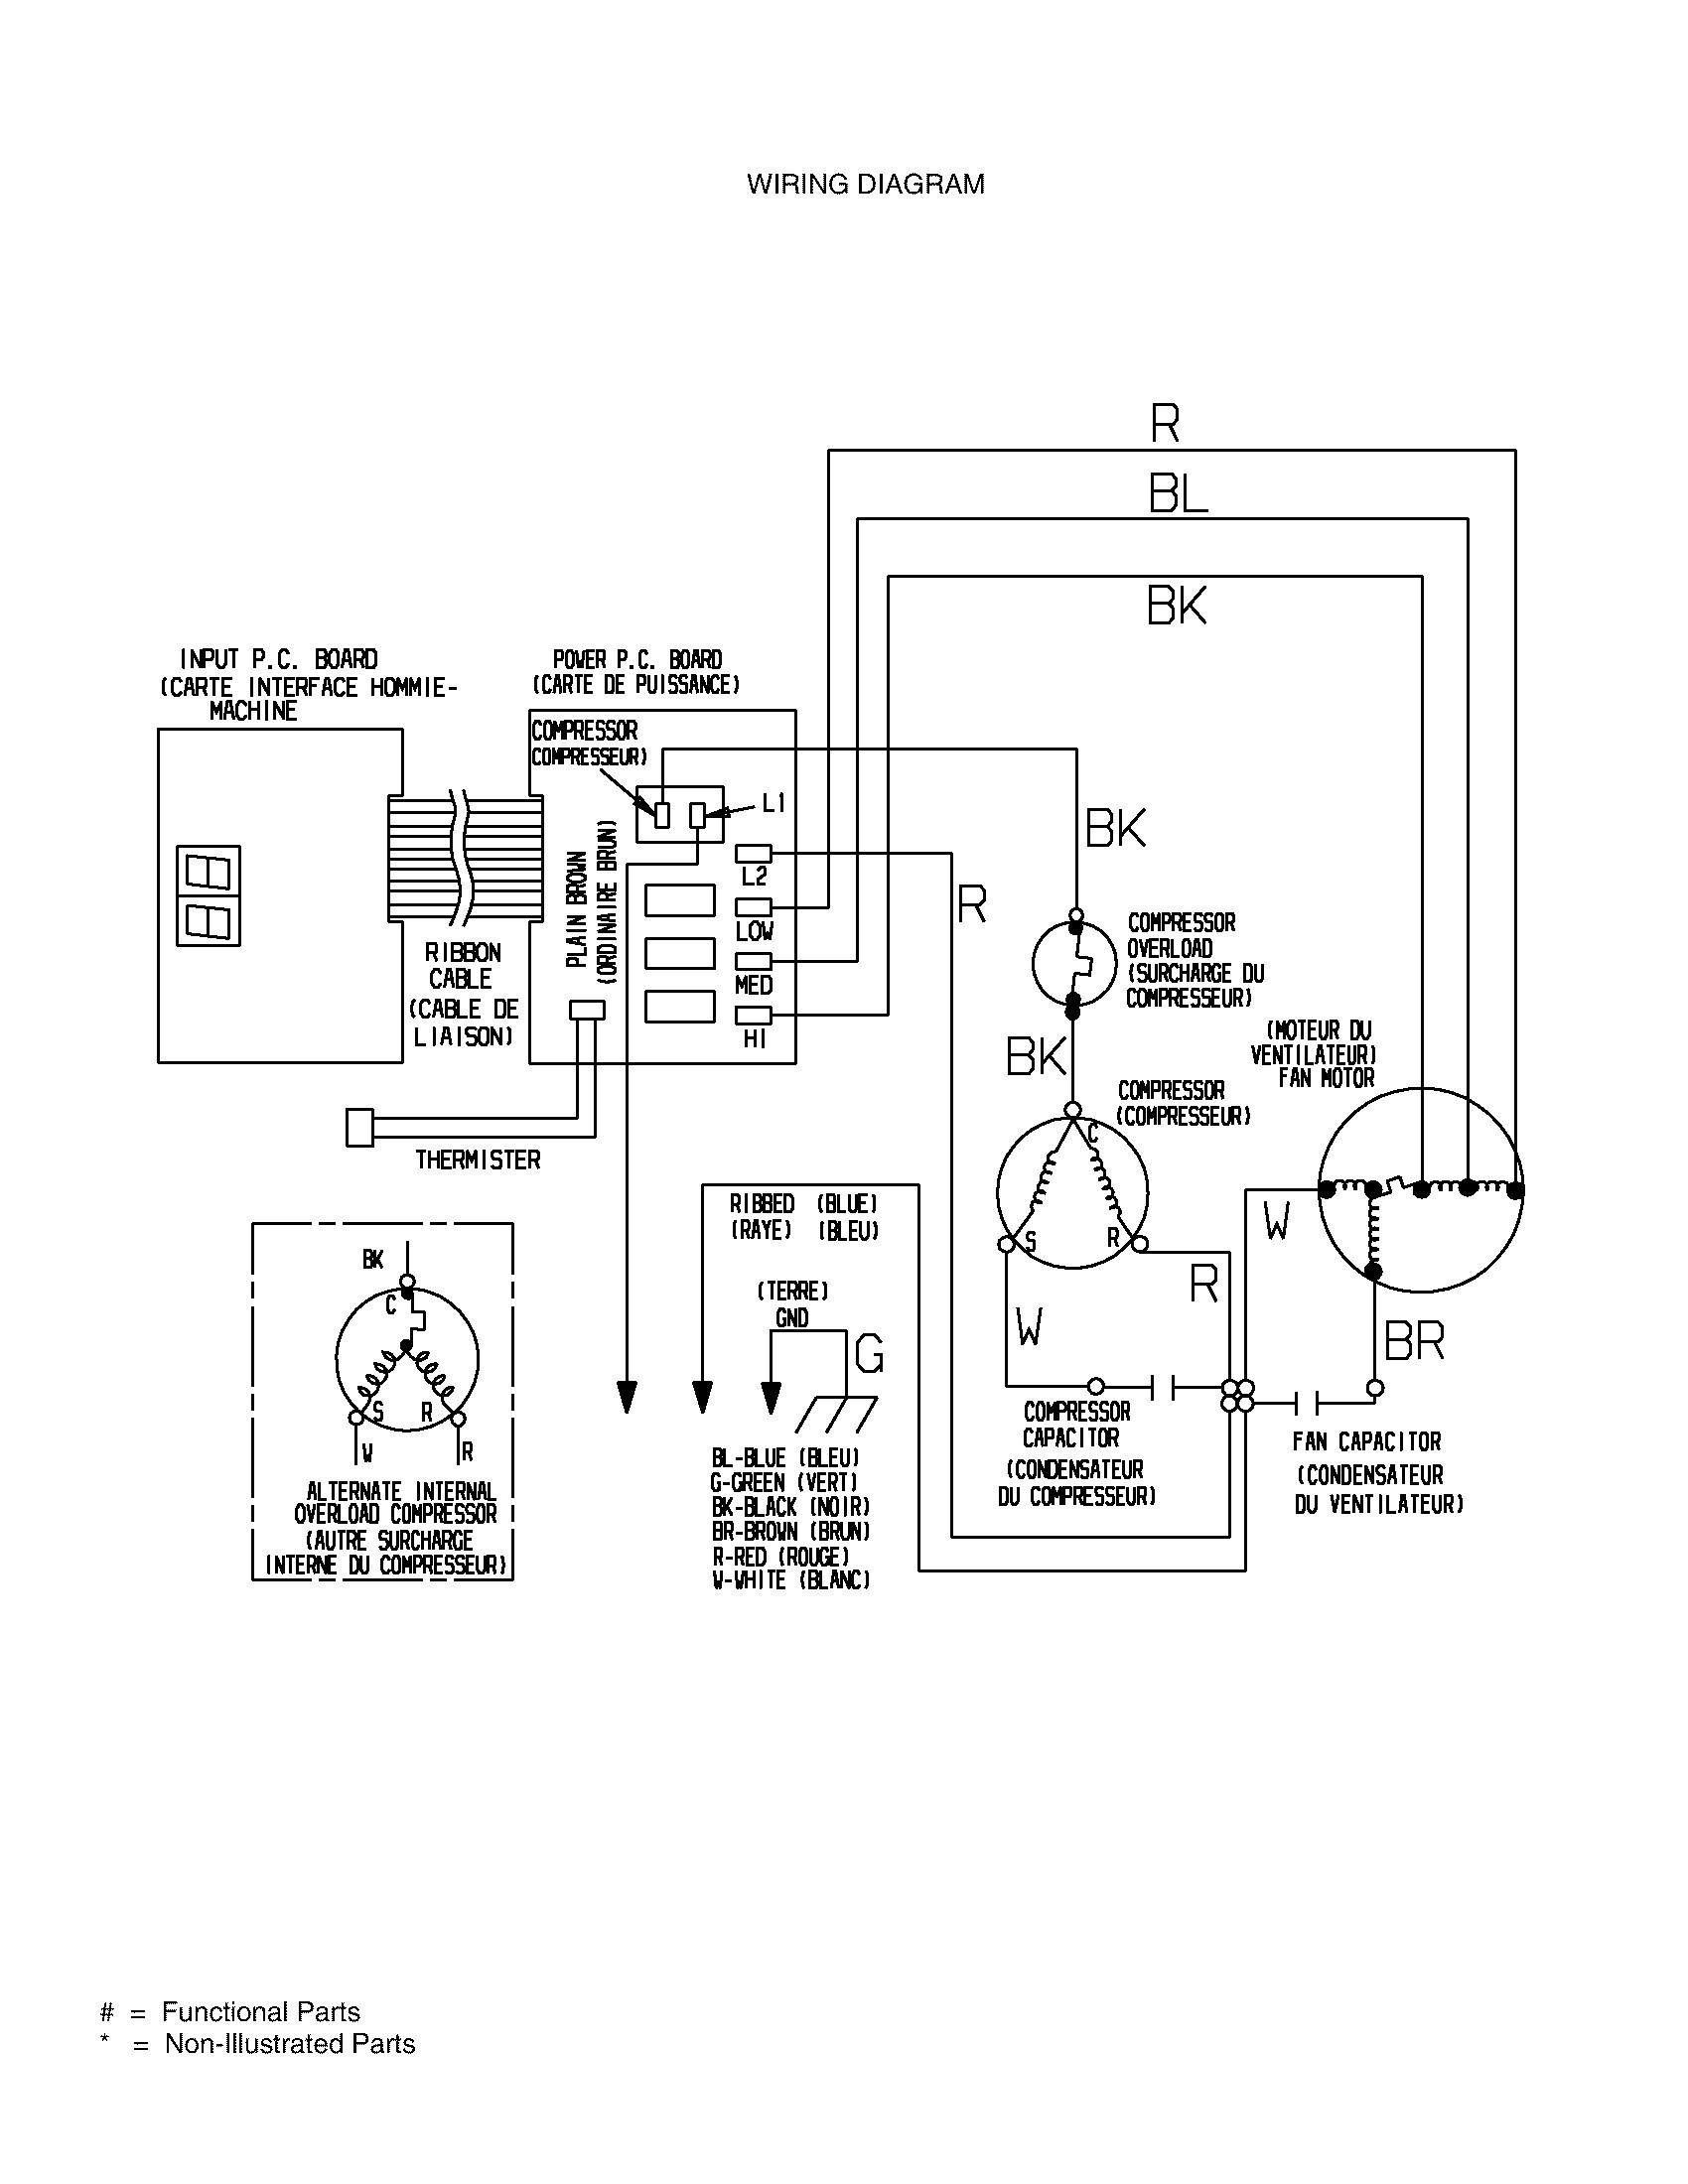 Wiring Diagram Ac Split Mitsubishi Inspirationa Motor Capacitor Wiring Diagram Manual New Blower Motor Wiring